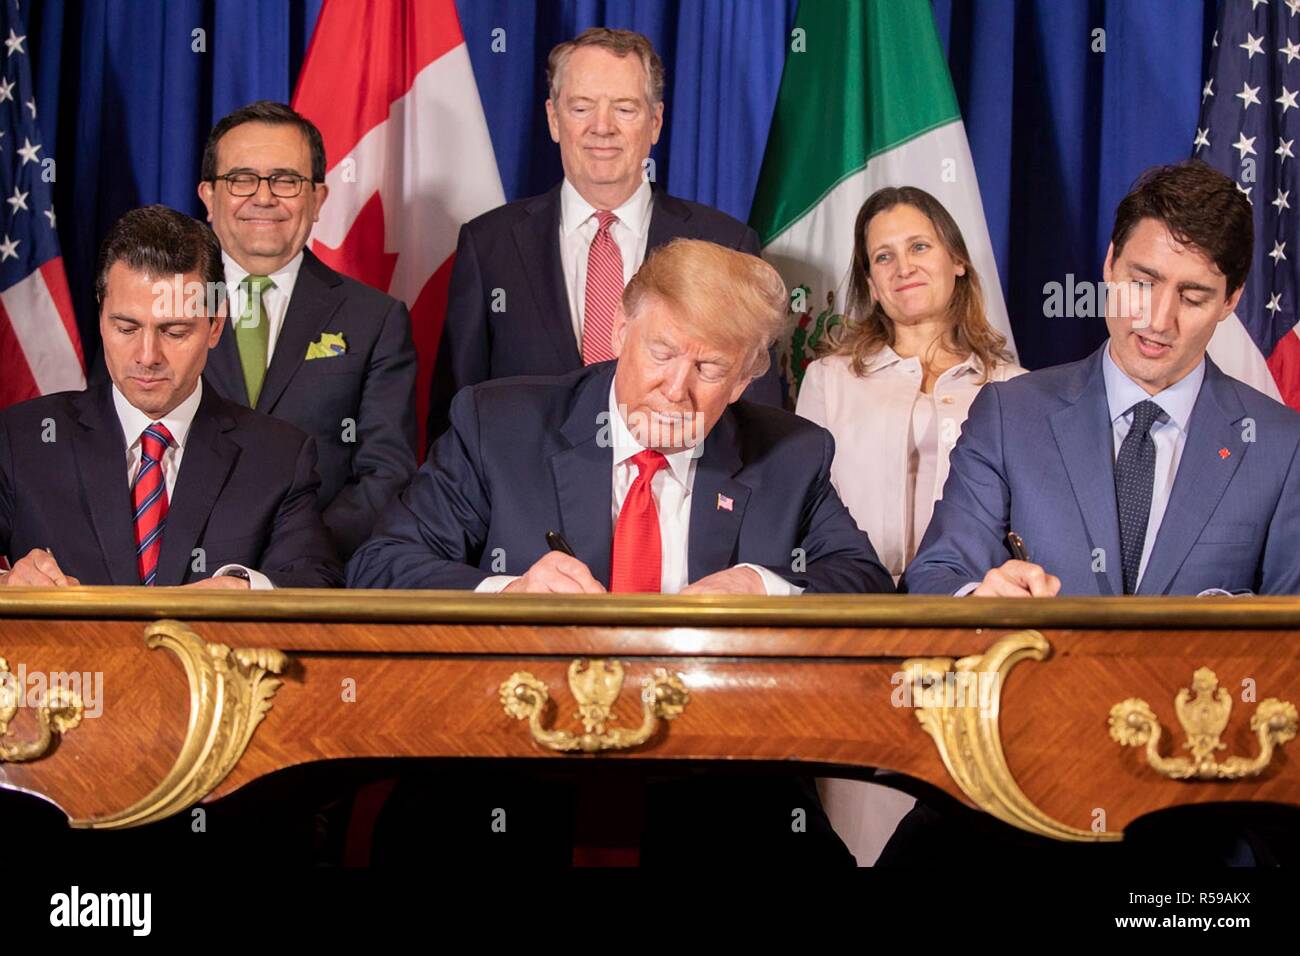 Le Président américain Donald Trump, centre, le premier ministre du Canada, Justin Trudeau, à droite, et le président mexicain Enrique Pena Neto, gauche, au cours de la cérémonie de signature de l'ALÉNA nouveau commerce appelé USMCA 30 novembre 2018 à Buenos Aires, Argentine. Banque D'Images